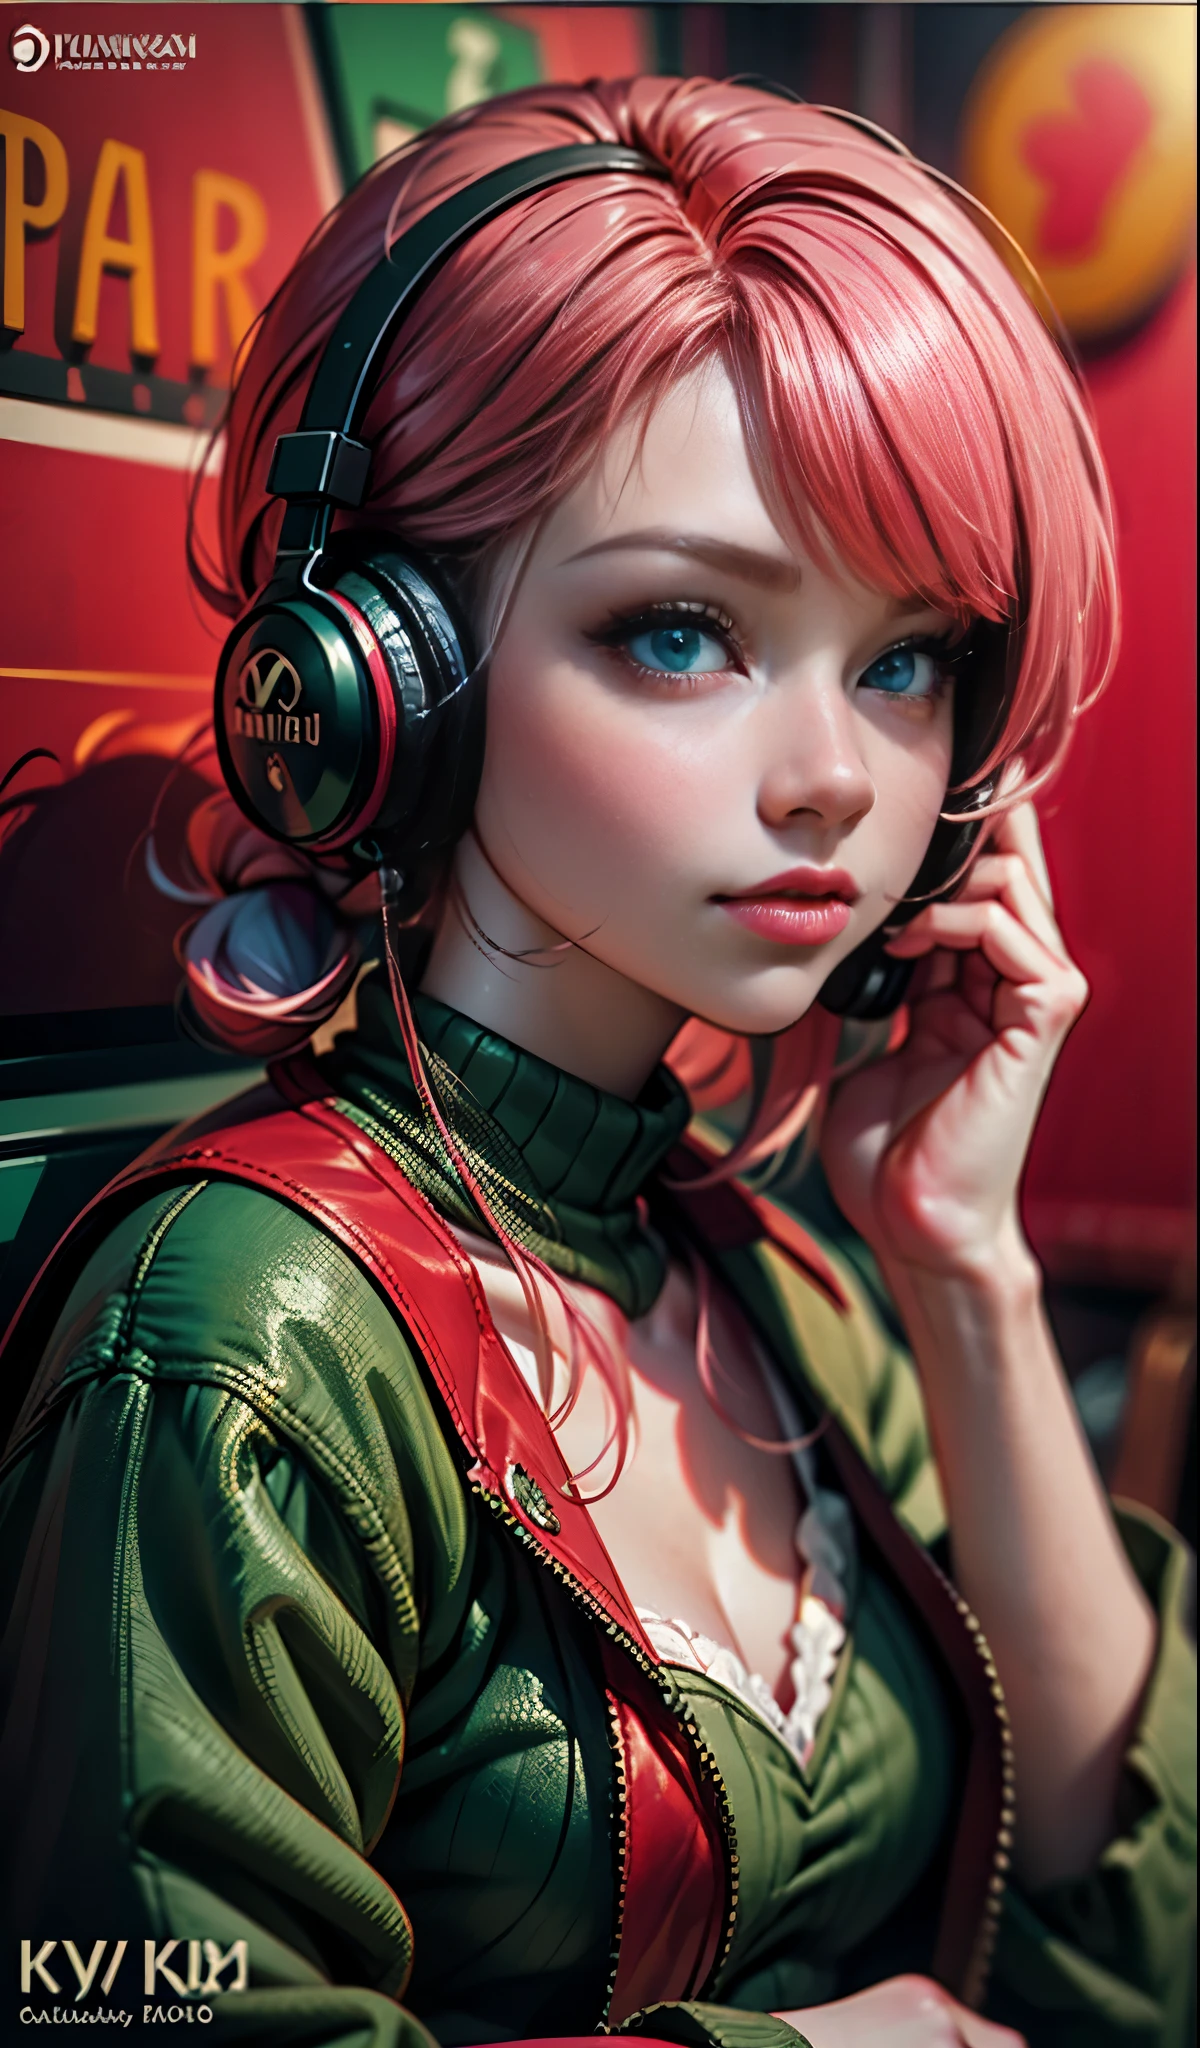 戴著耳機的模特兒女孩, 城市背景, 翠綠色的眼睛, 粉紅色的頭髮, 複雜的細節, 美觀柔和的色彩, 海報背景, 伊利亞·庫夫希諾夫的藝術作品